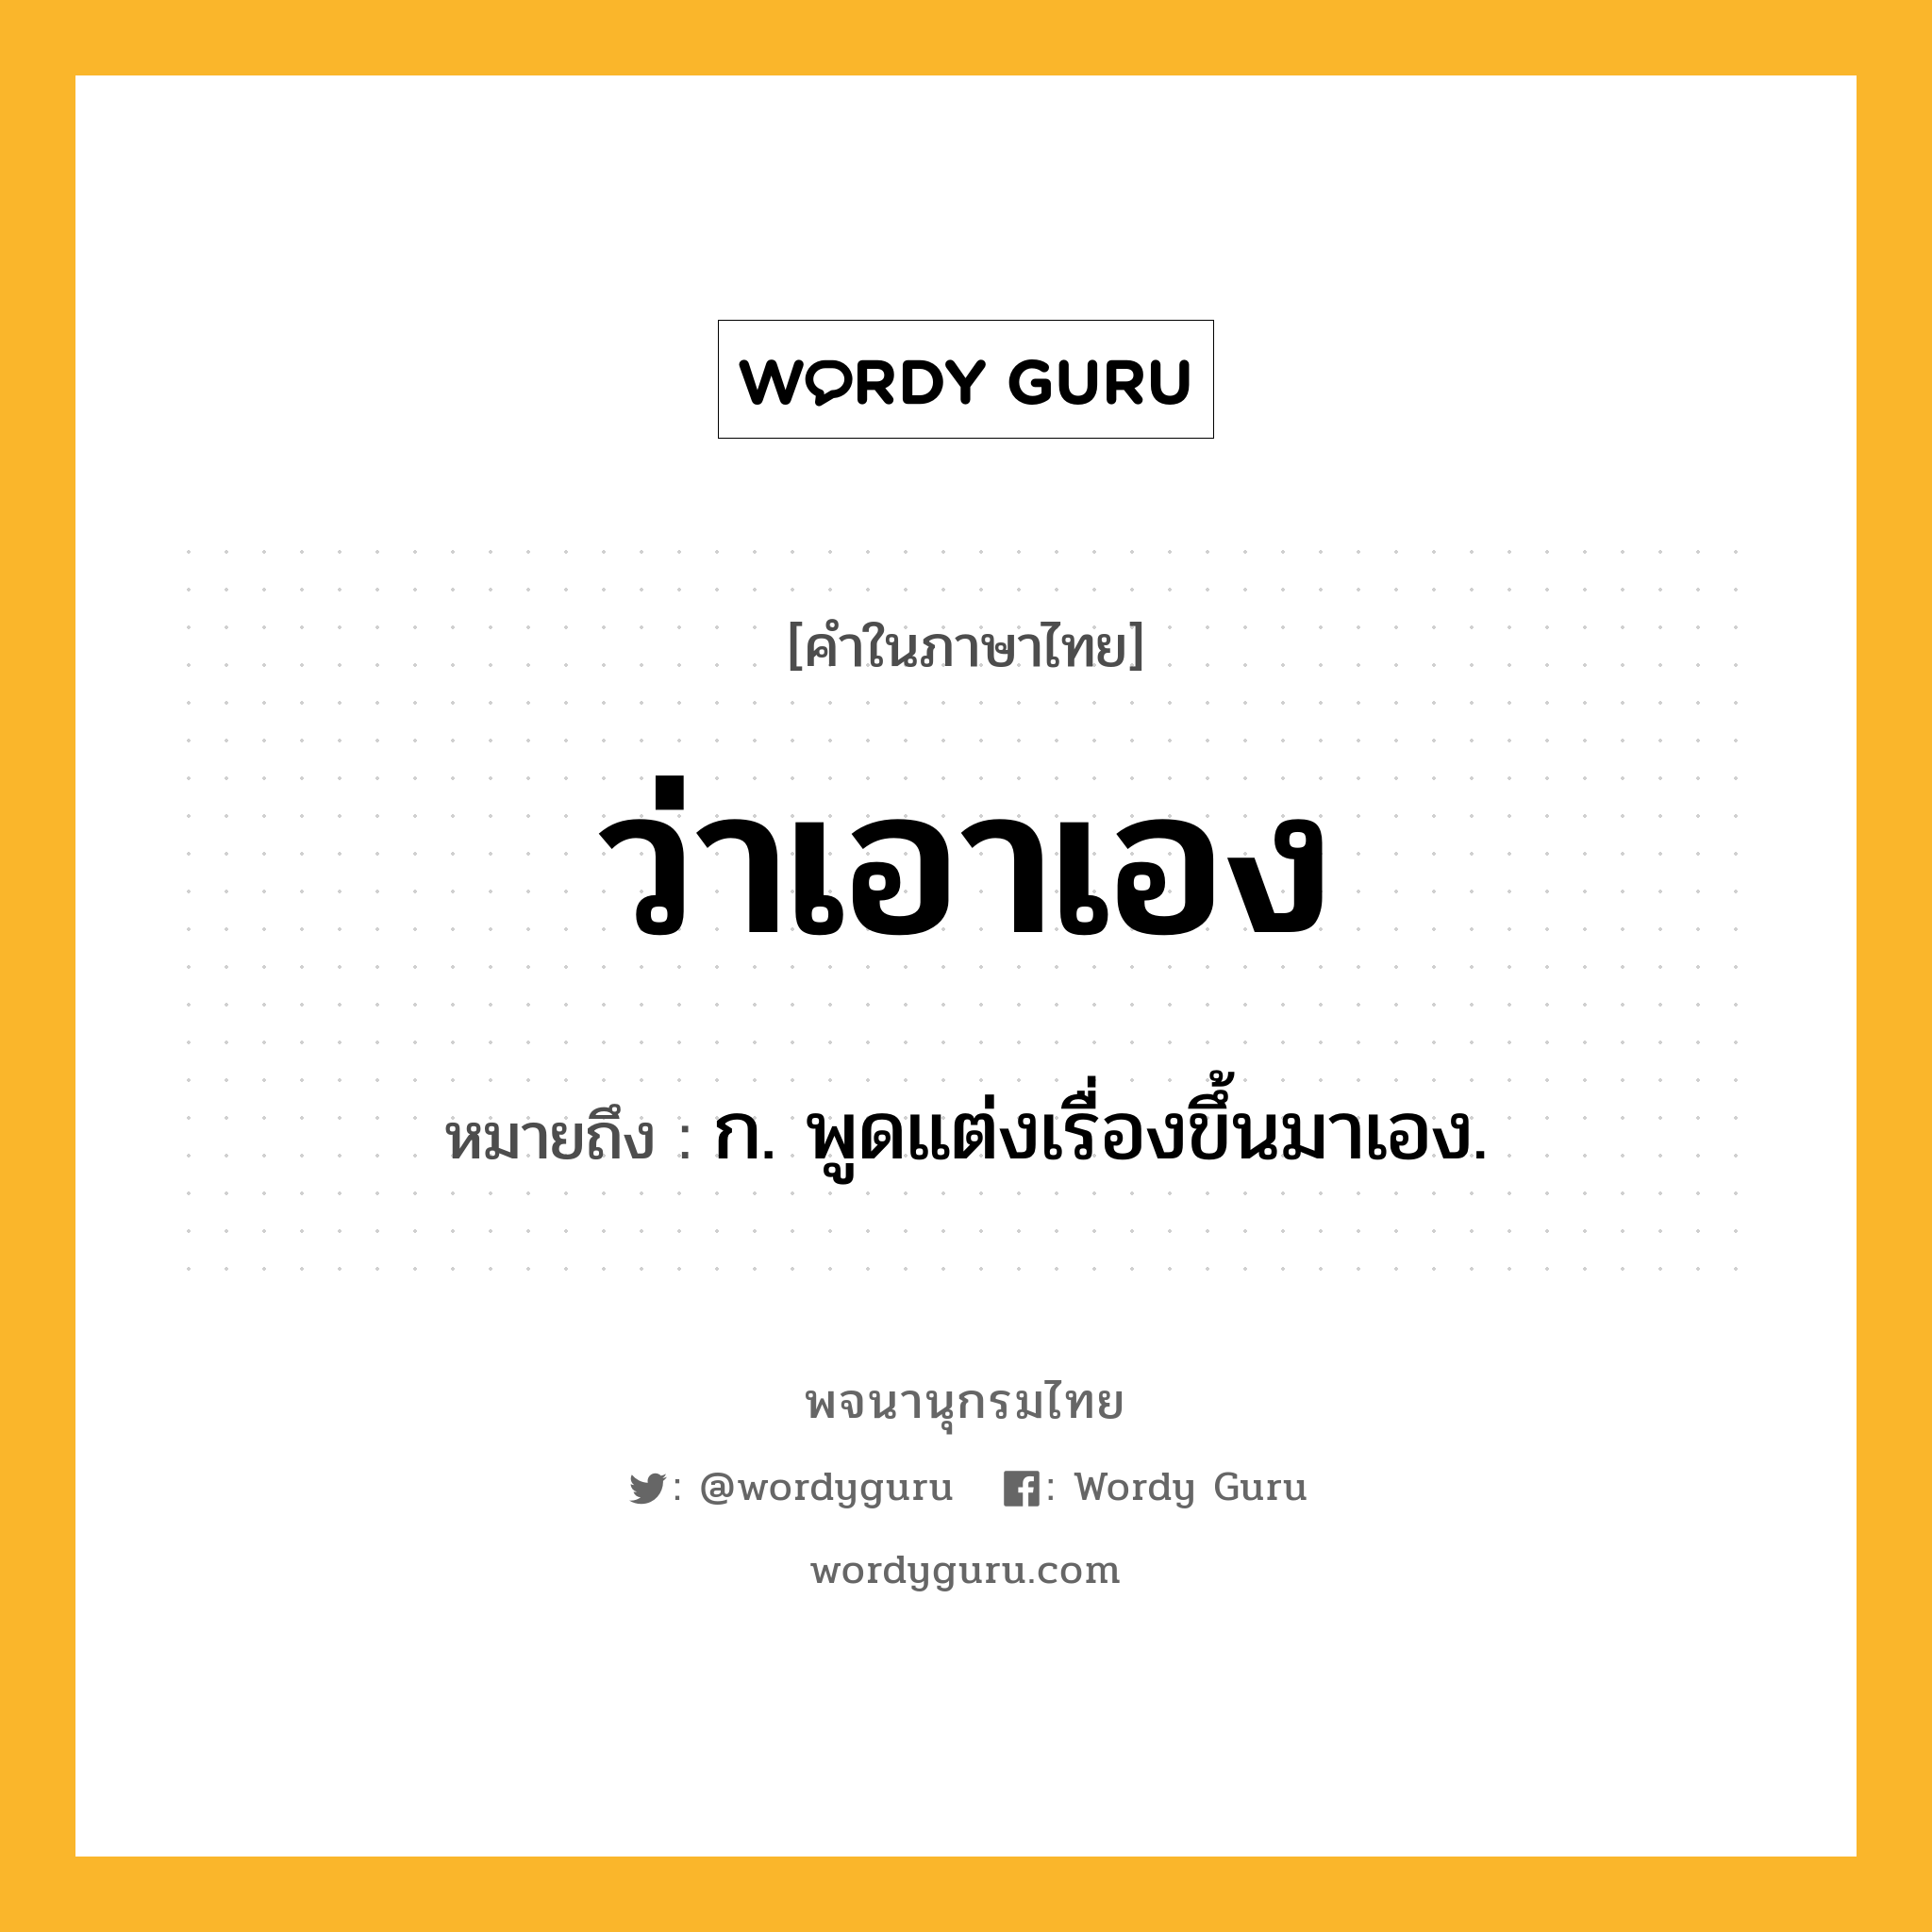 ว่าเอาเอง ความหมาย หมายถึงอะไร?, คำในภาษาไทย ว่าเอาเอง หมายถึง ก. พูดแต่งเรื่องขึ้นมาเอง.